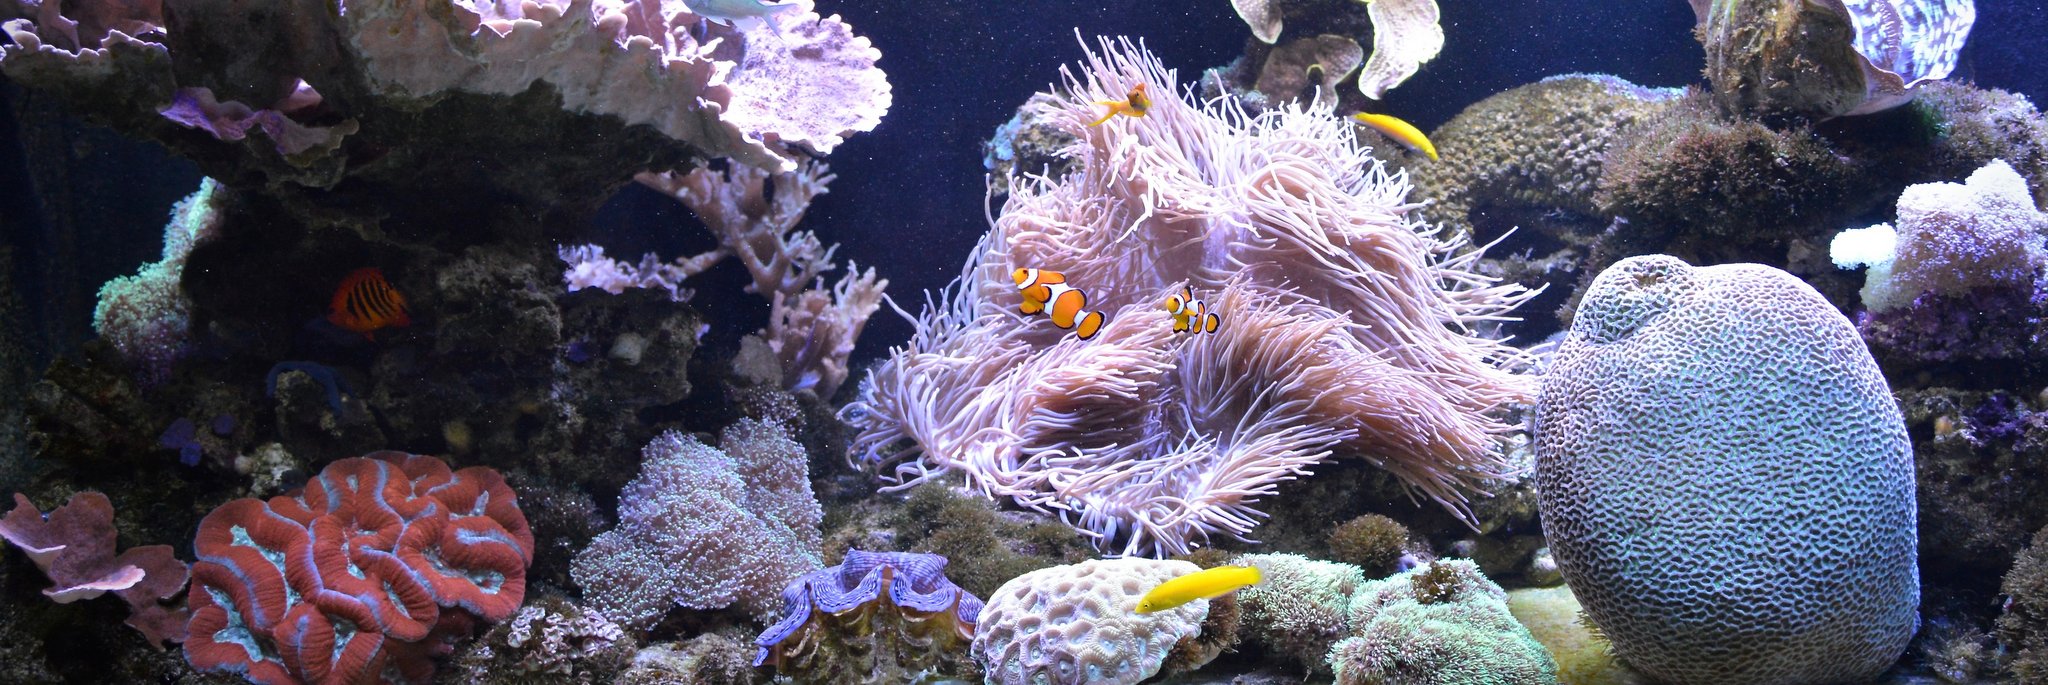 Fish on indoor living reef aquarium